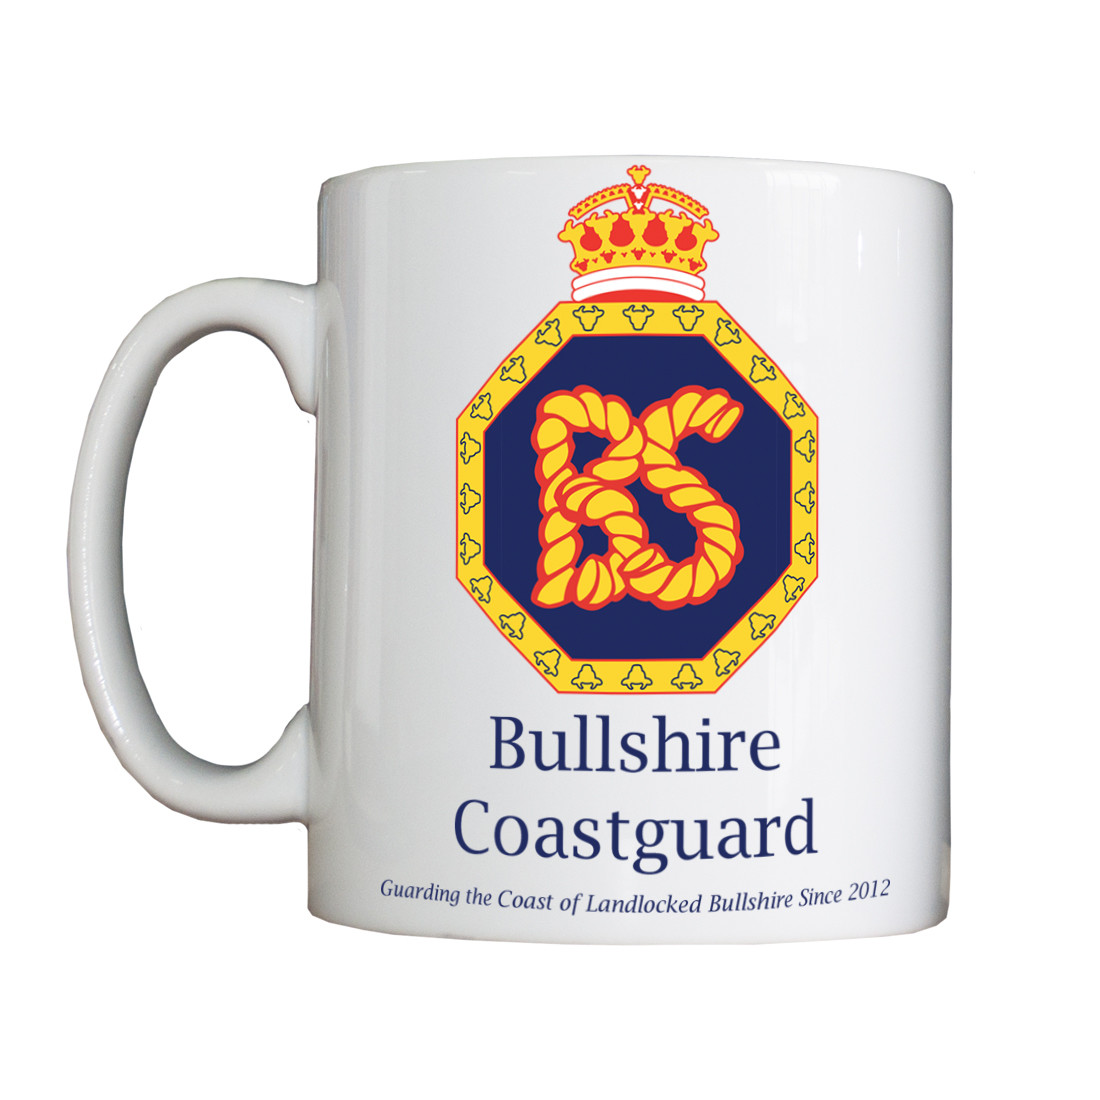 Personalised 'Bullshire Coastguard' Drinking Vessel